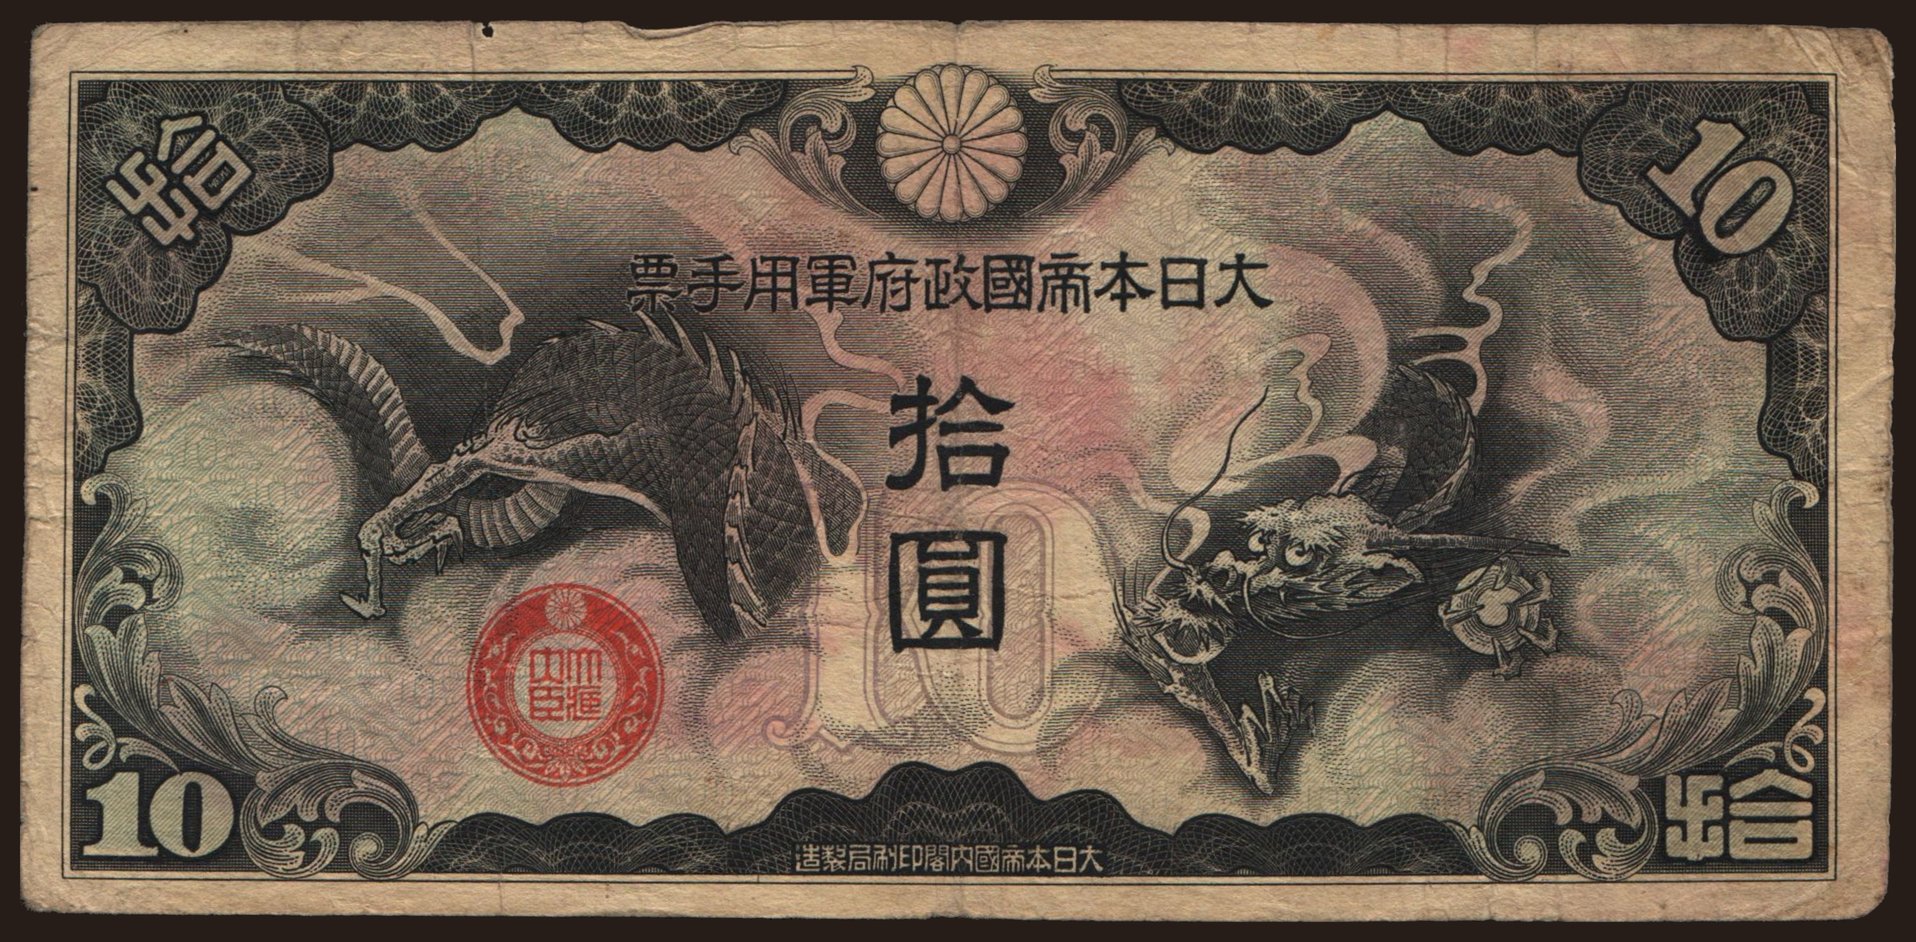 10 yen, 1939